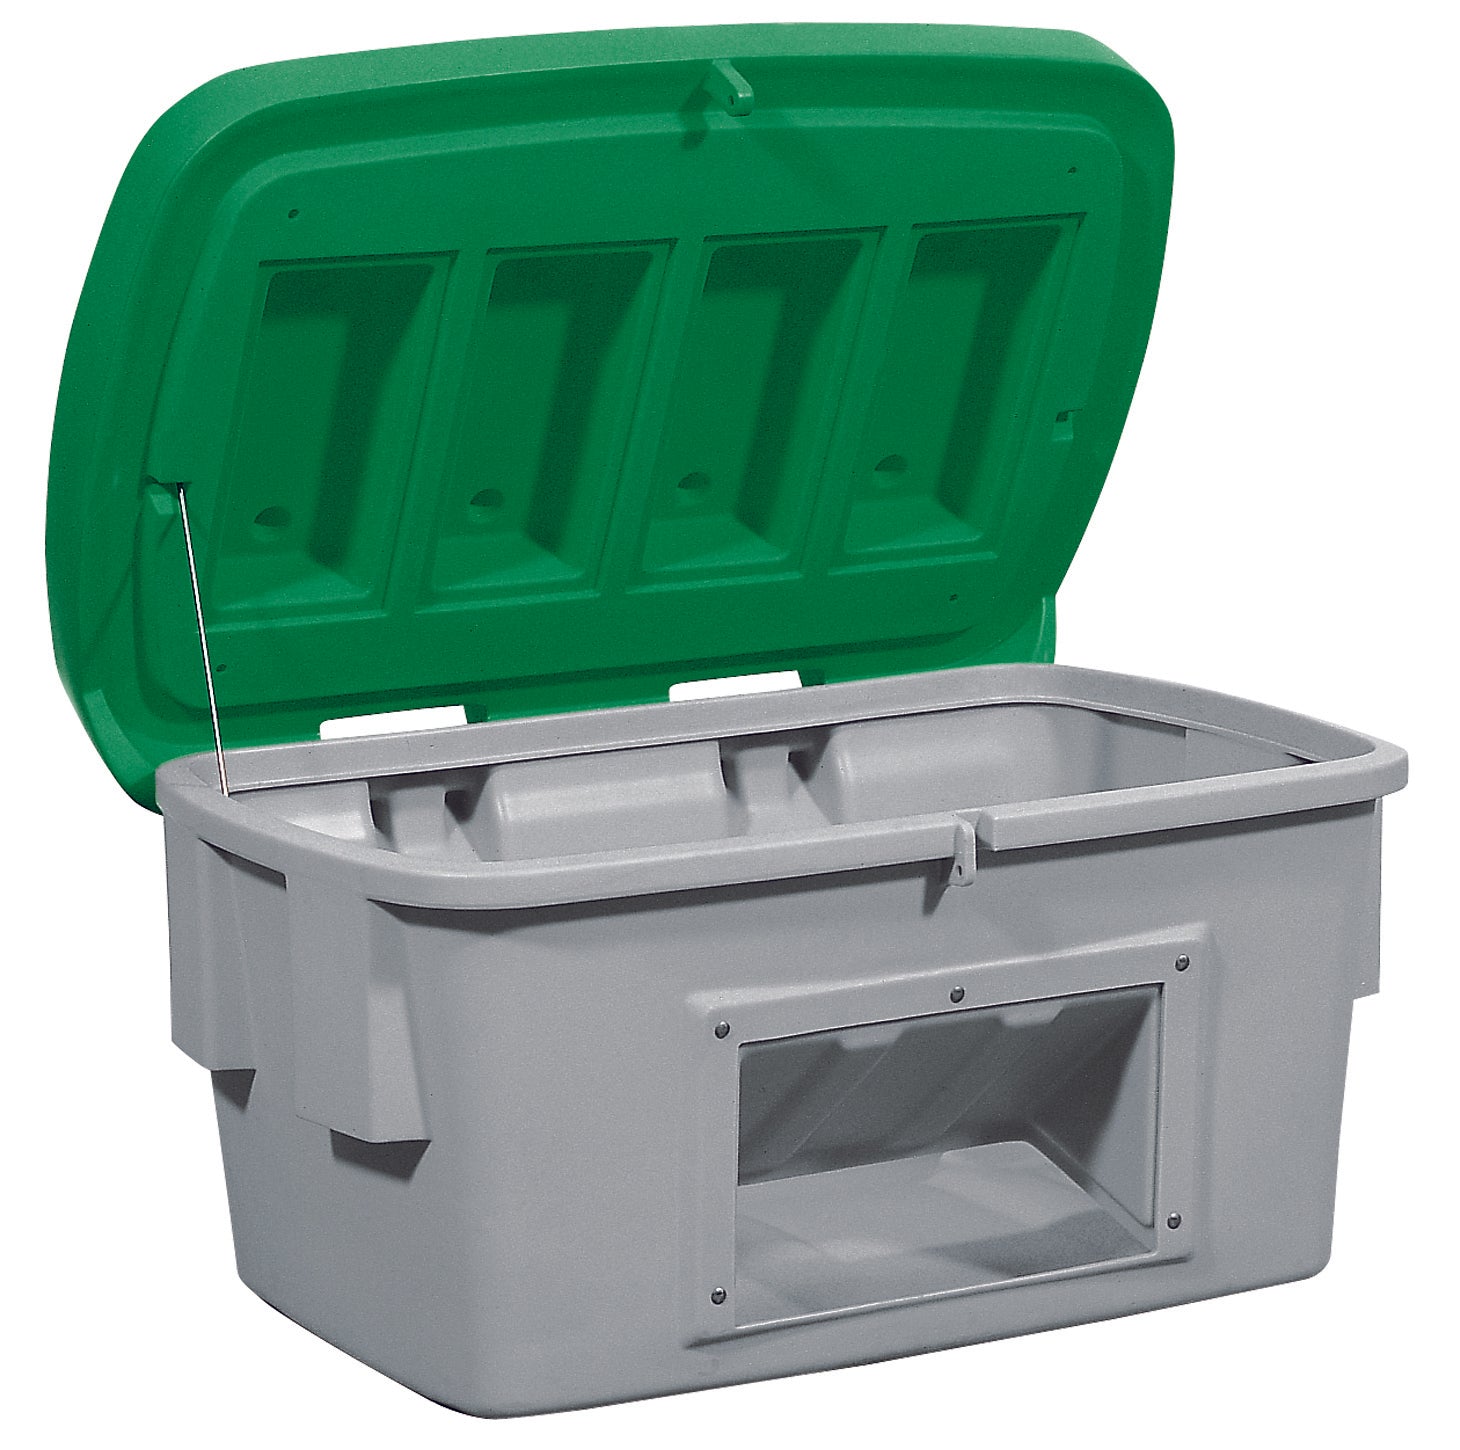 Streugutbehälter PE mit Entnahmeöffnung Grün, 200 L, Polyethylen